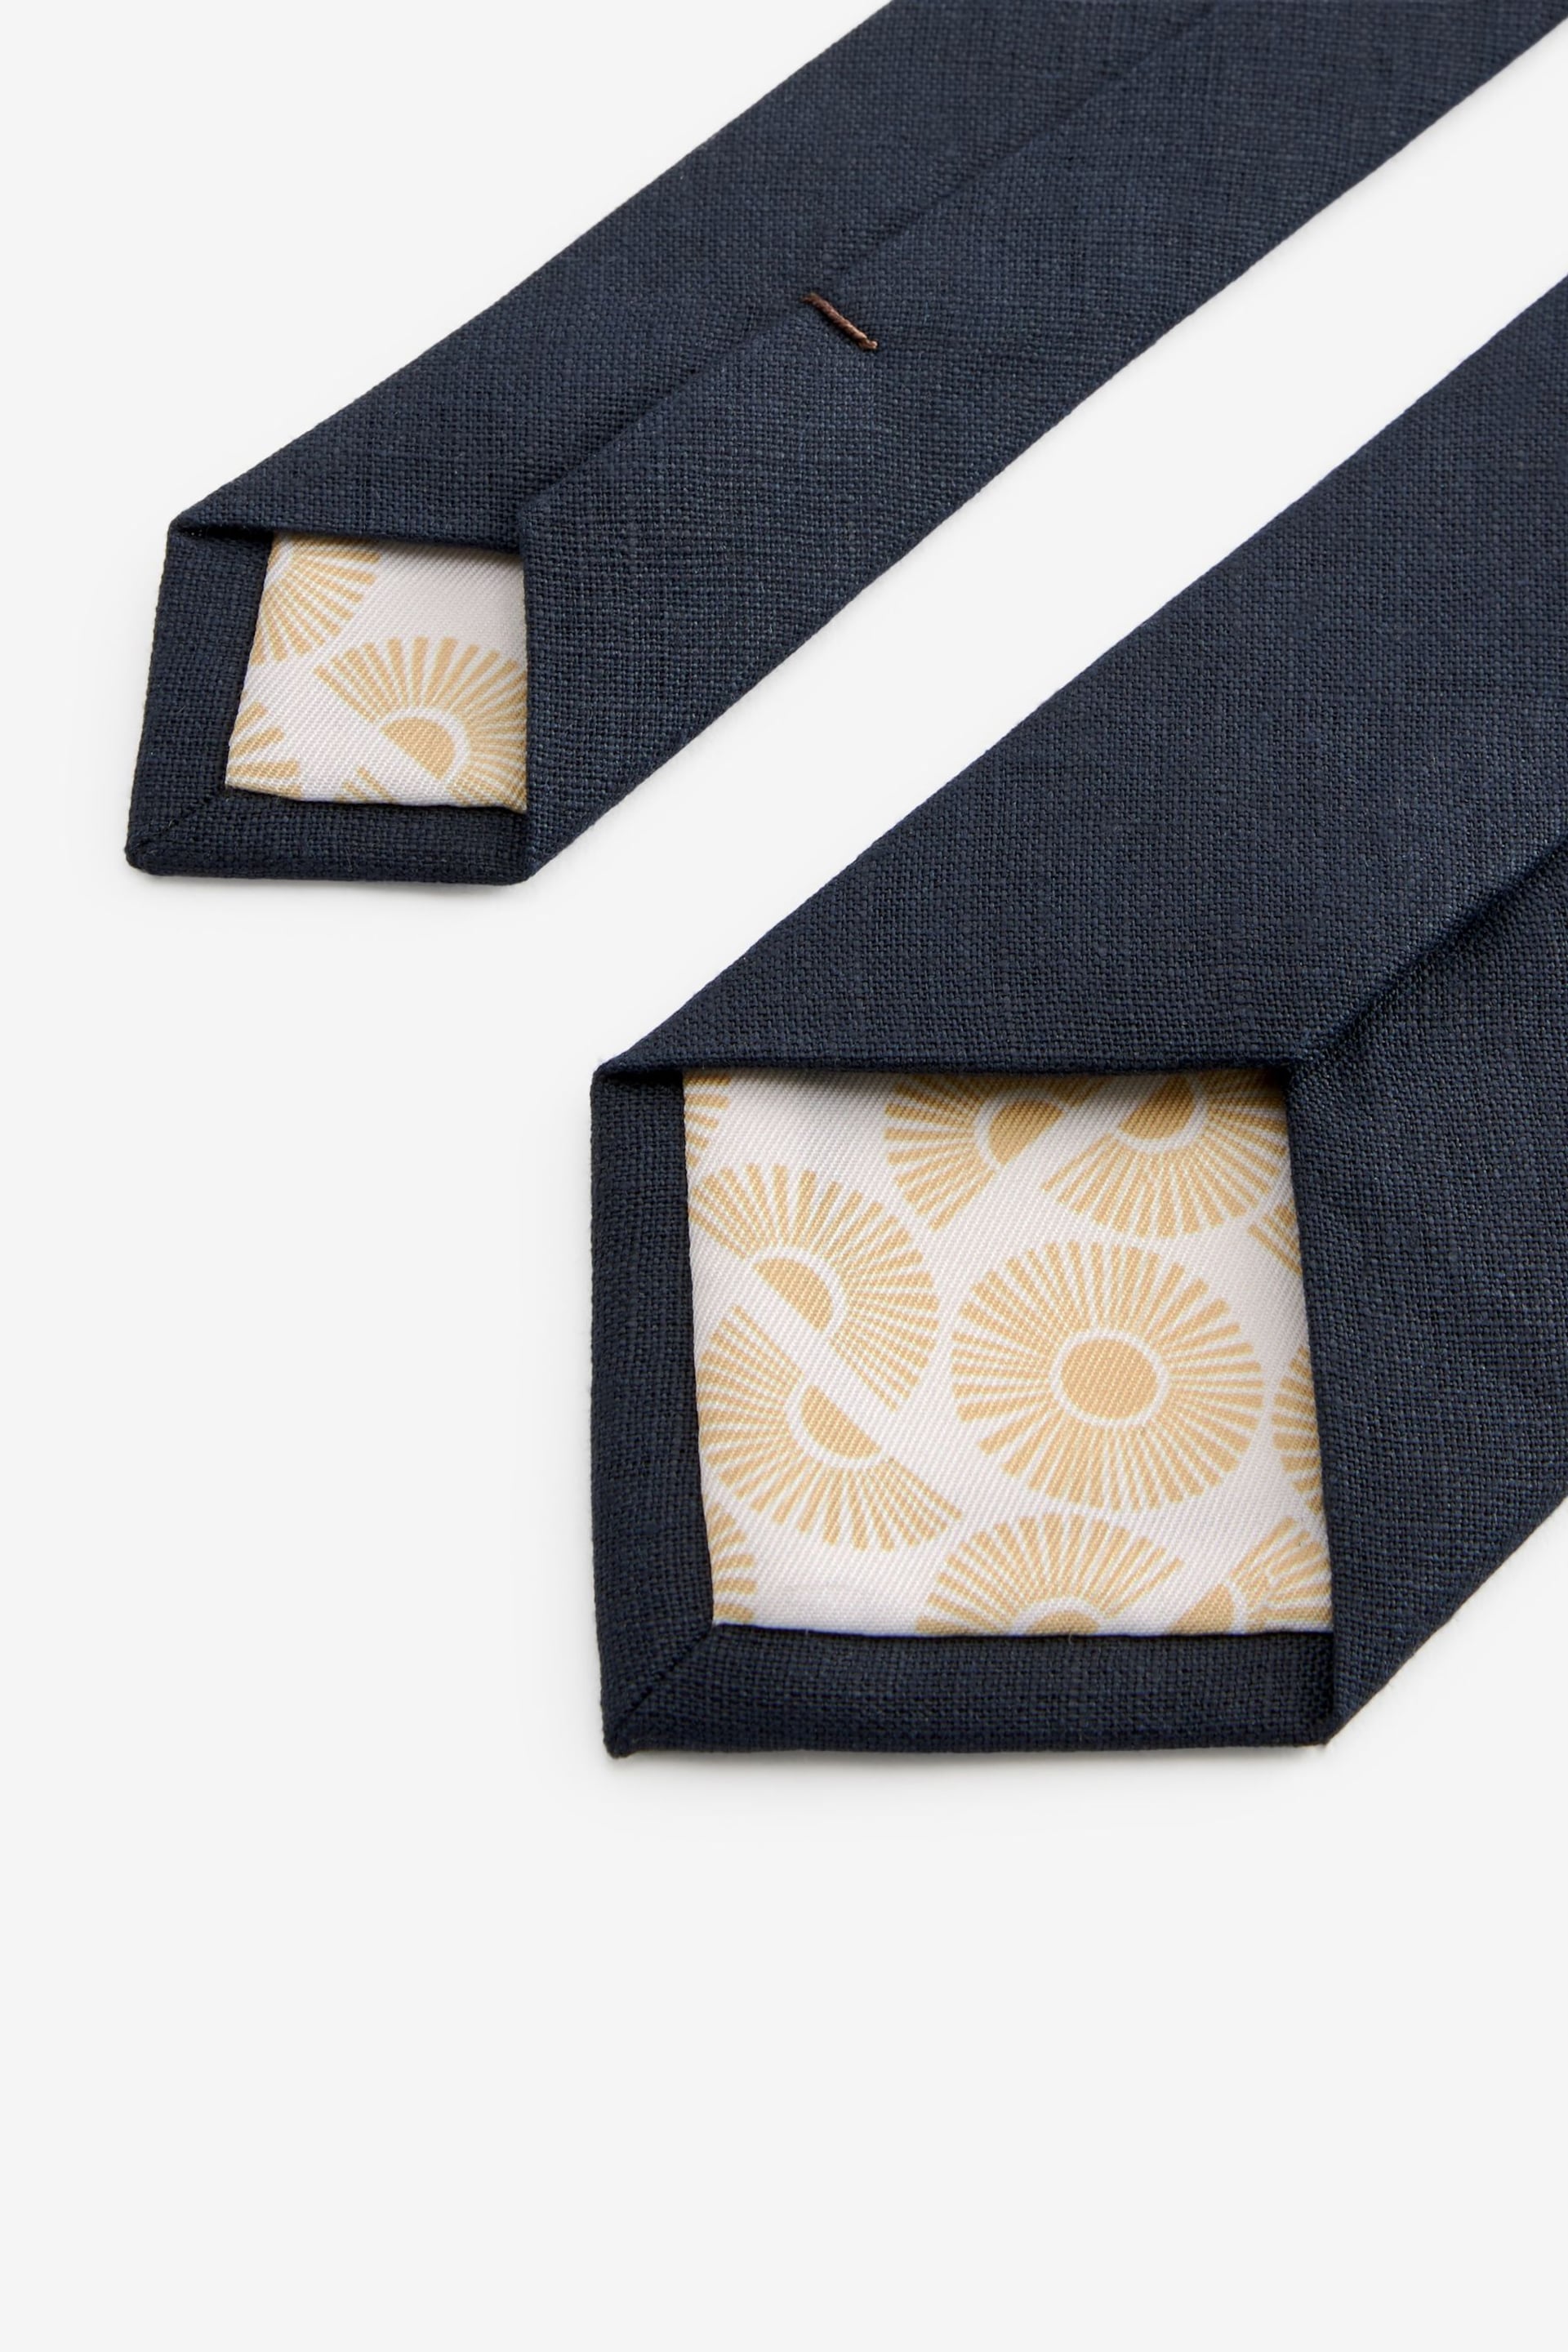 Navy Blue Linen Tie - Image 3 of 3